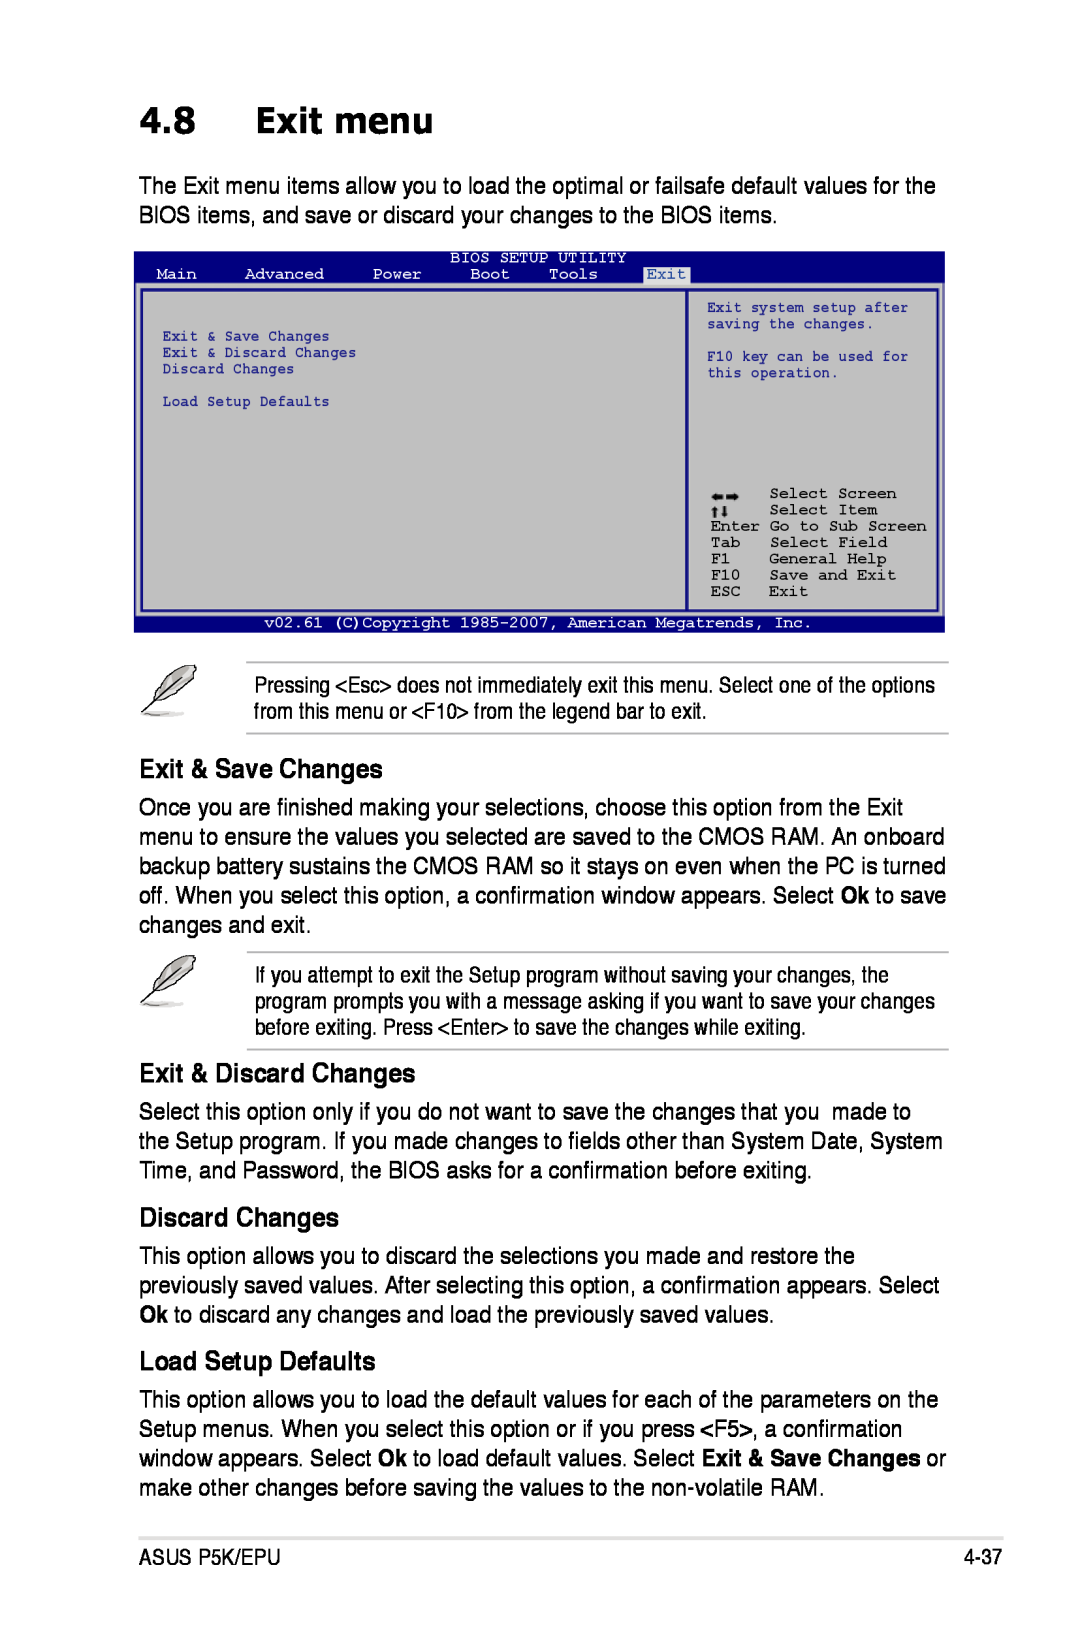 Asus P5K/EPU manual Exit menu, Exit & Save Changes, Exit & Discard Changes, Load Setup Defaults 